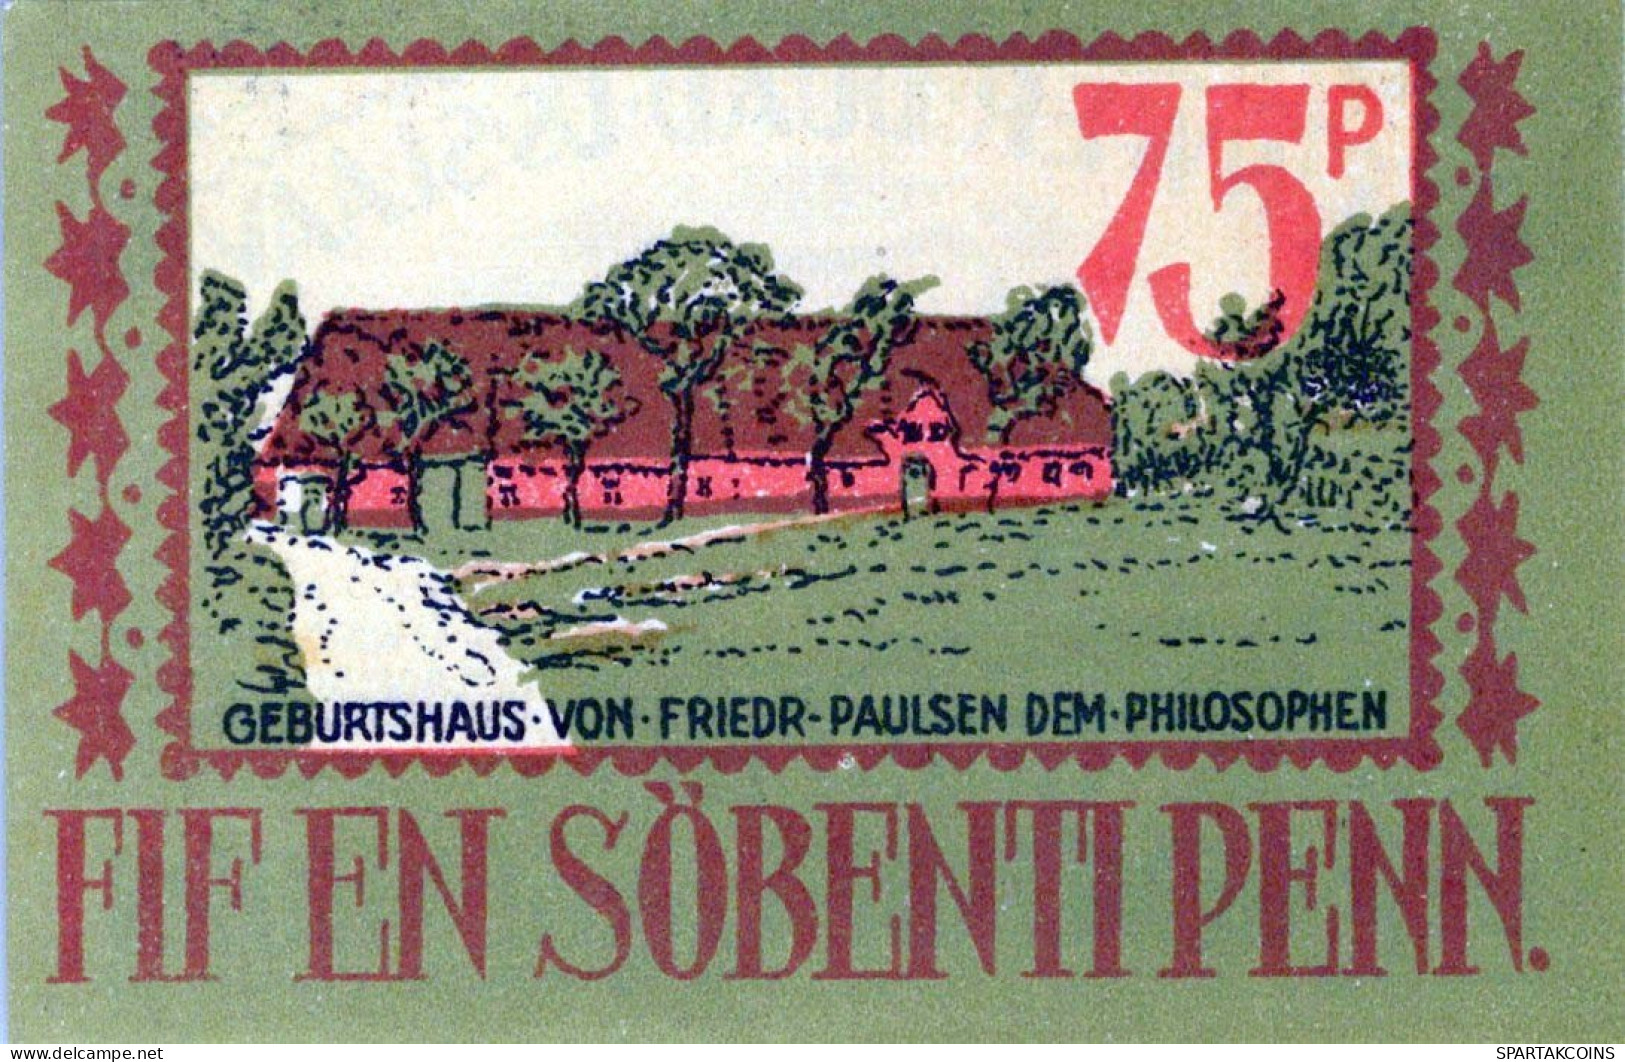 75 PFENNIG 1921 Stadt LANGENHORN IN NORDFRIESLAND DEUTSCHLAND #PF397 - [11] Local Banknote Issues